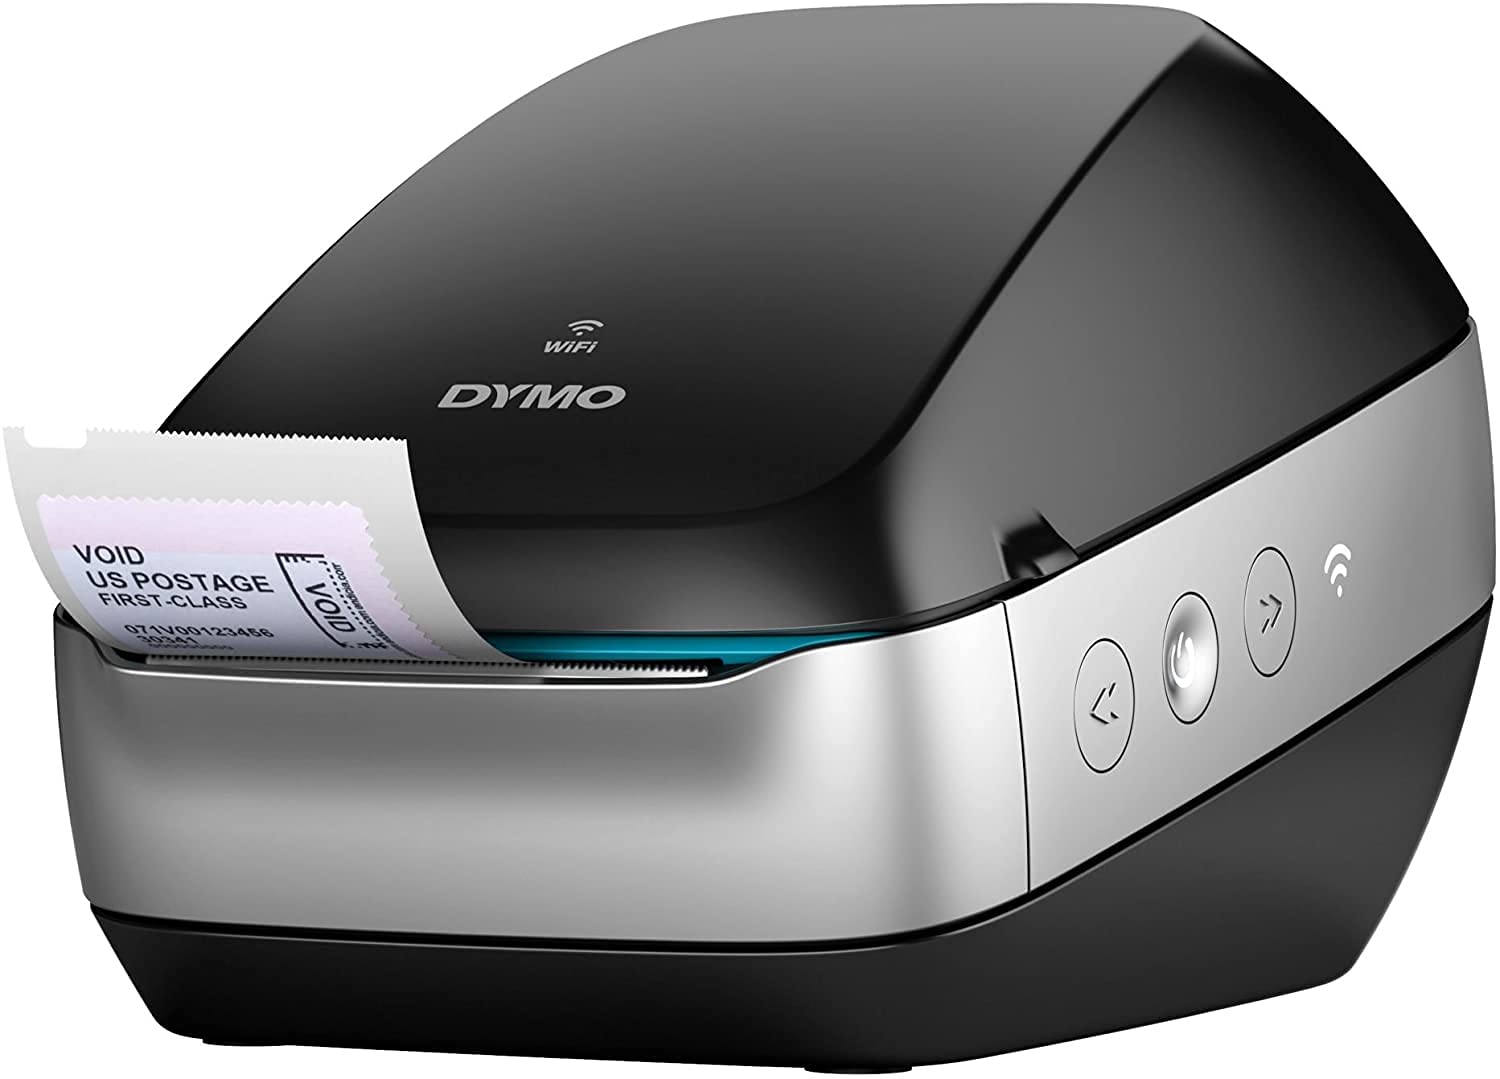 DYMO طابعة LabelWriter اللاسلكية